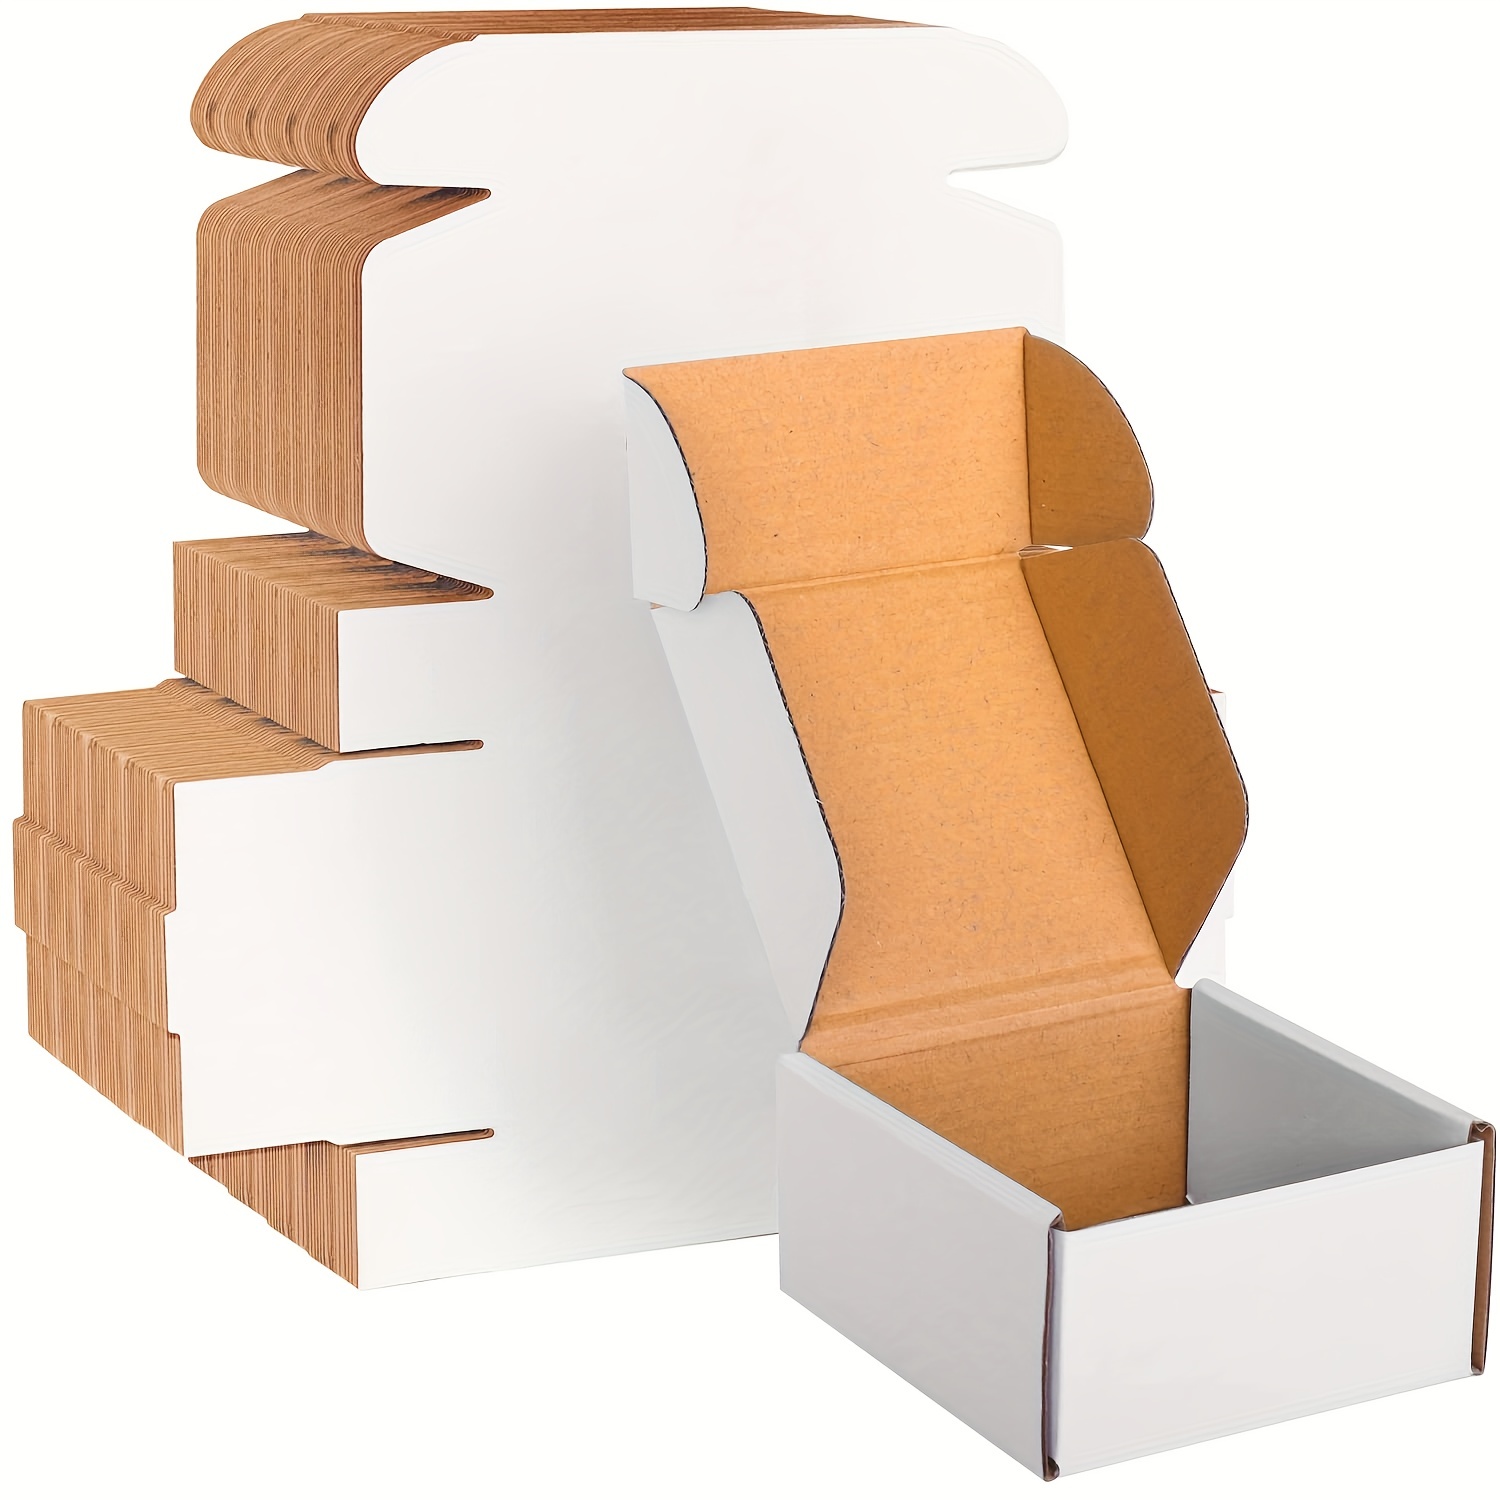 Paquete de 50 cajas de envío pequeñas de cartón corrugado de 4 x 4 x 4  pulgadas, caja de regalo blanca para pequeñas empresas, tazas de café